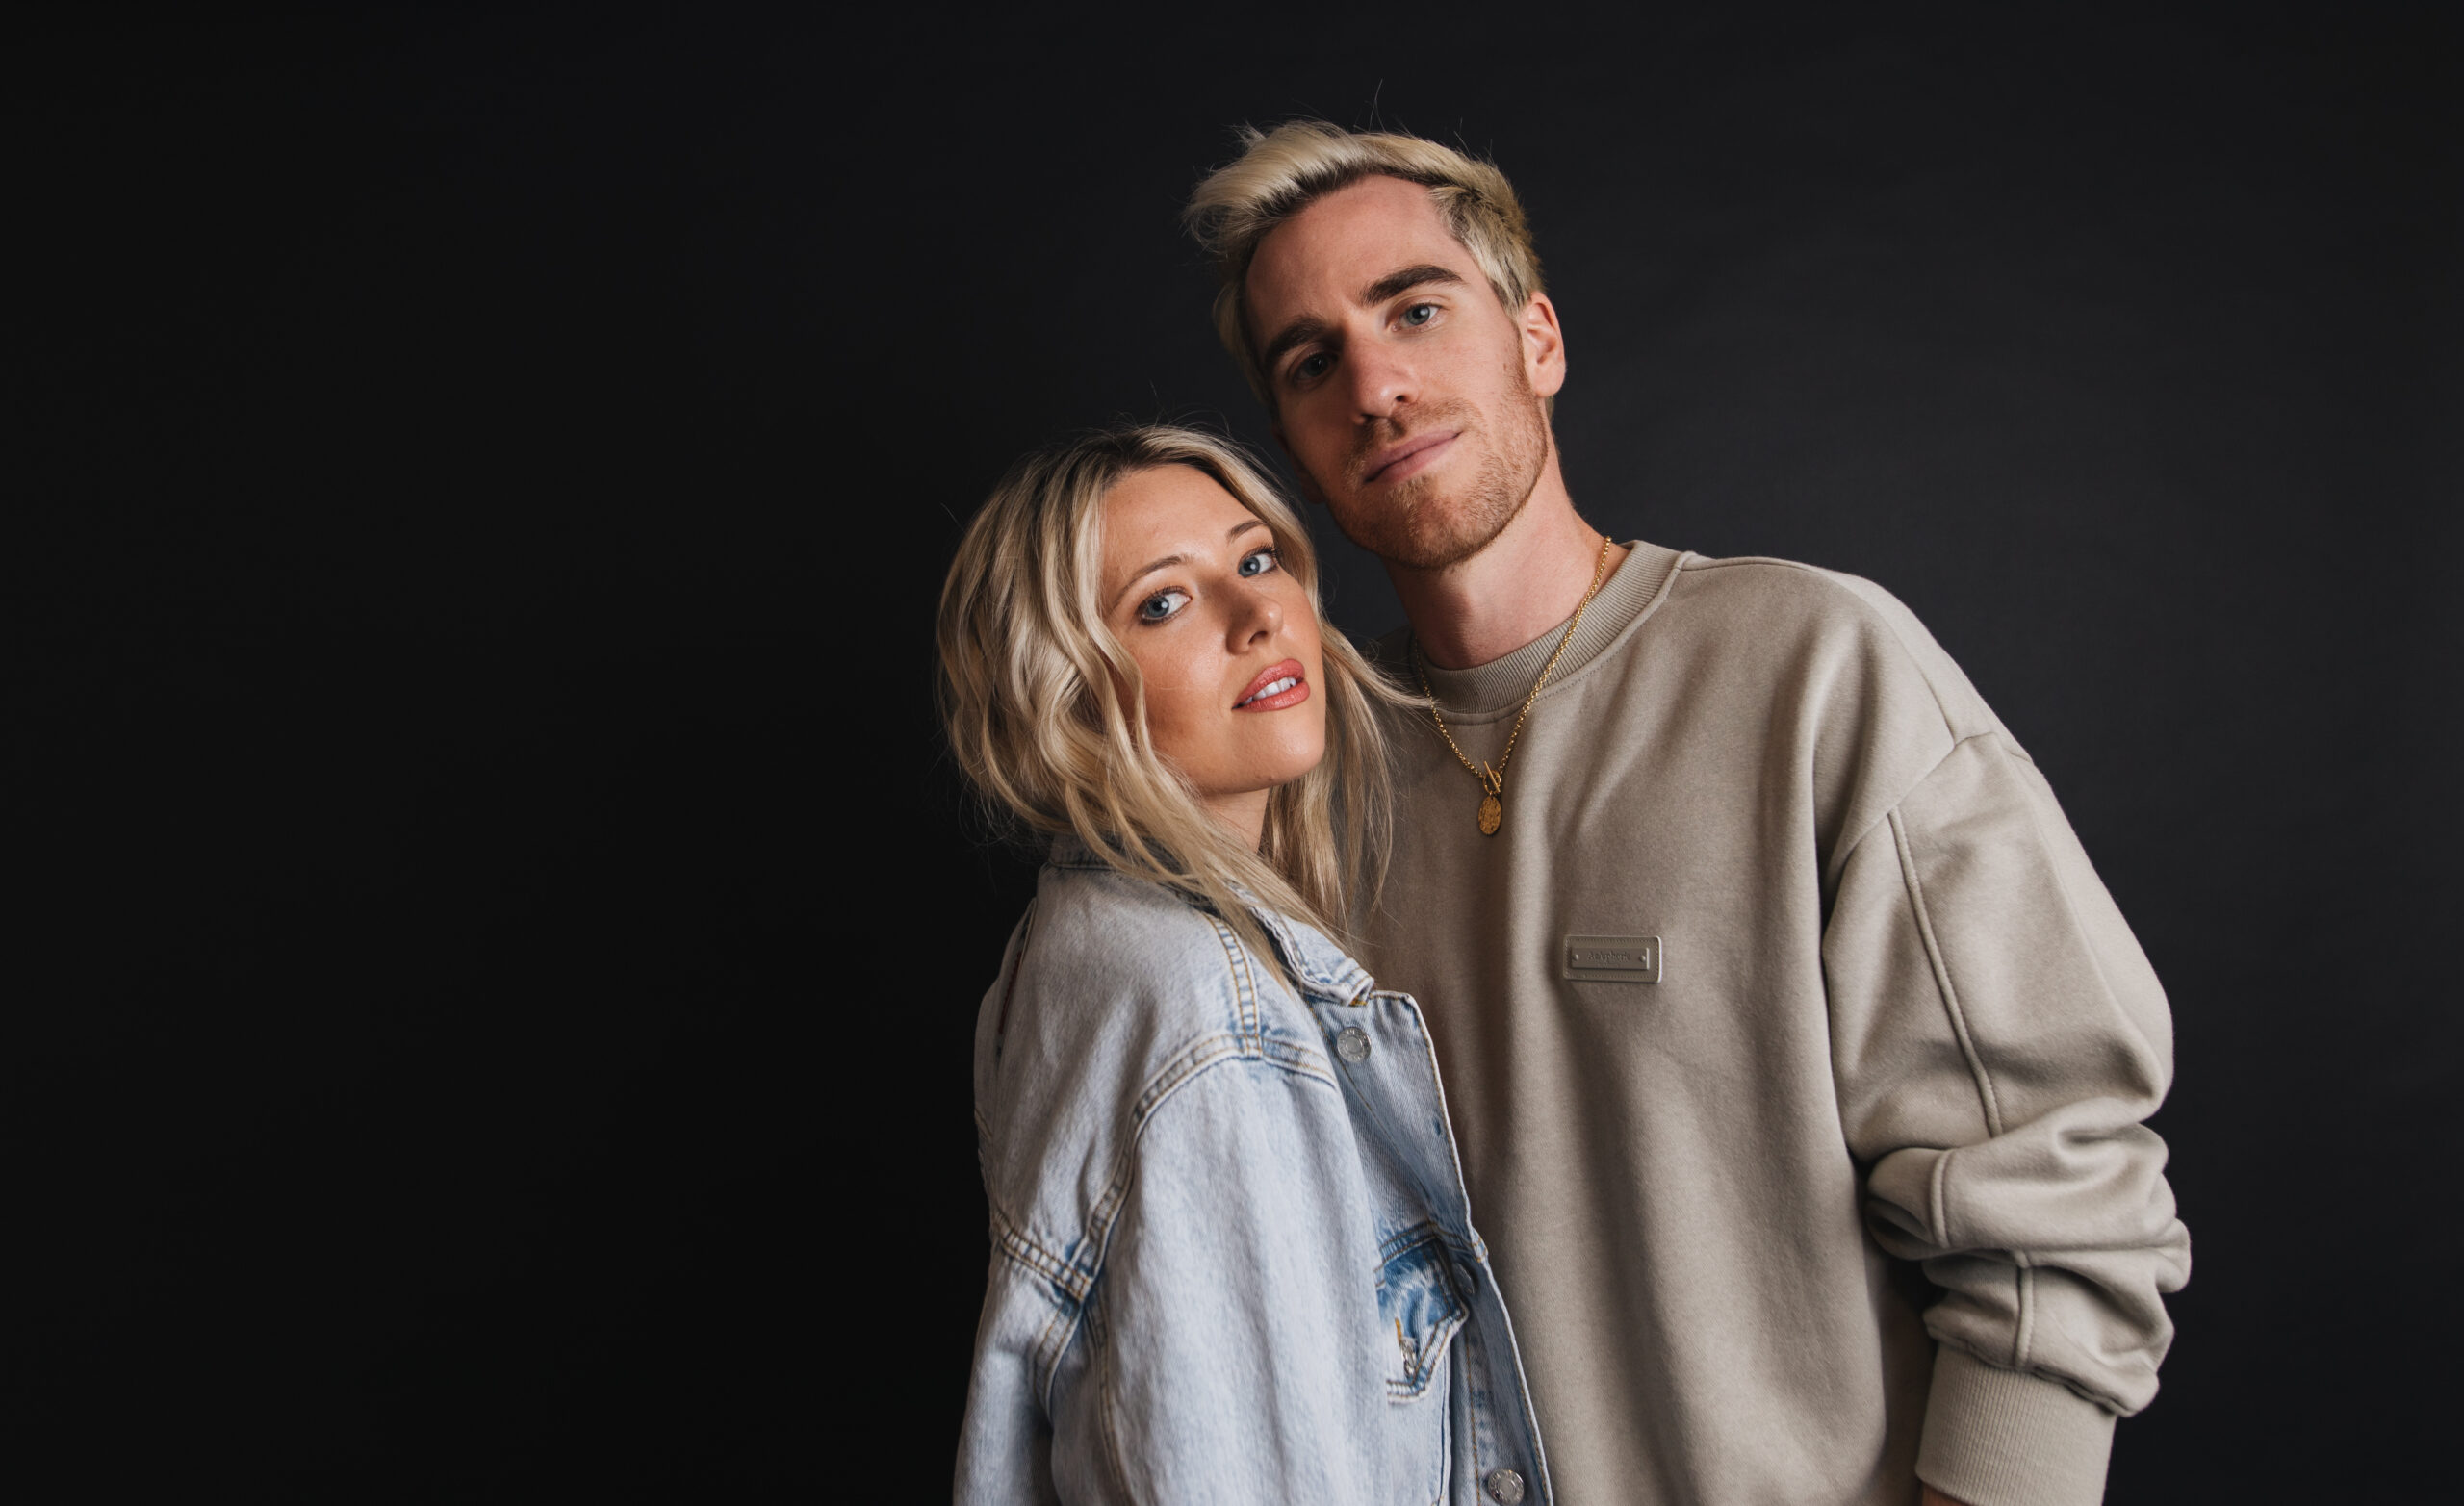 The Two Fake Blondes Mendapat Perawatan Remix Dari Sherm di “Alone”